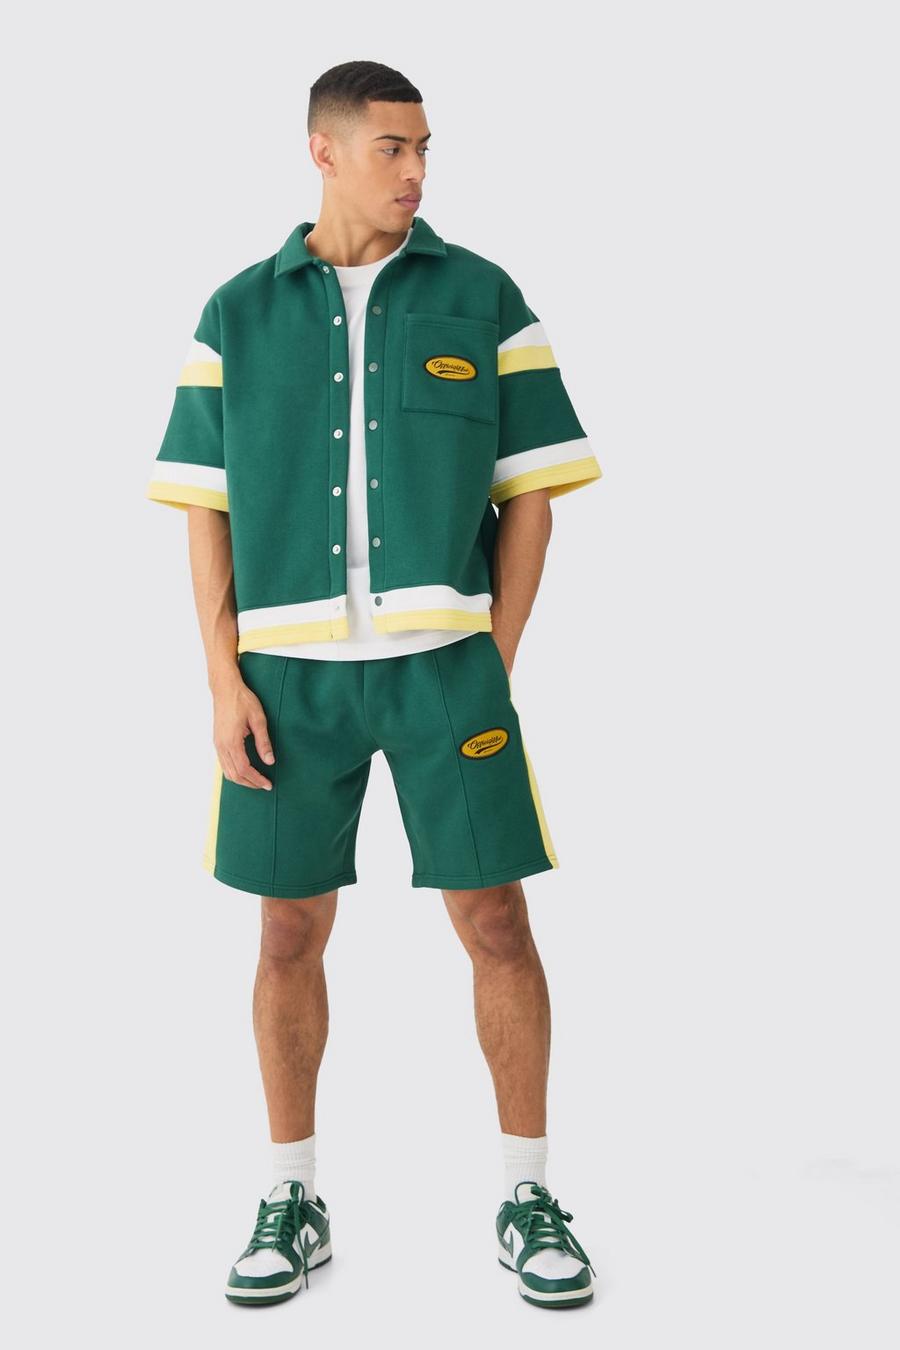 Green Skjorta och shorts i varsitystil